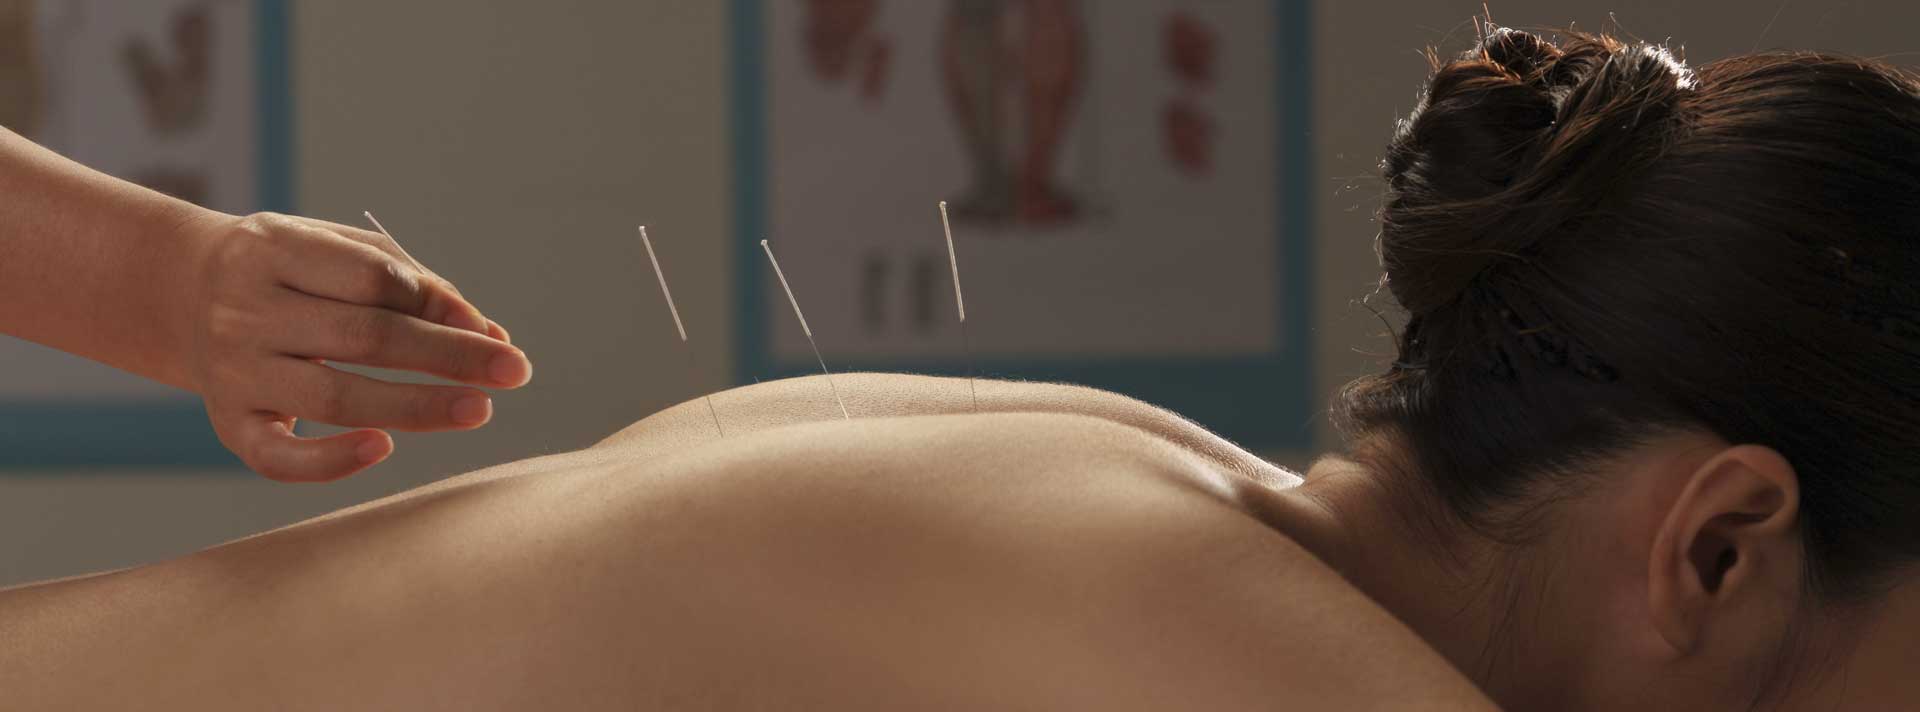 Accurate Acupuncture